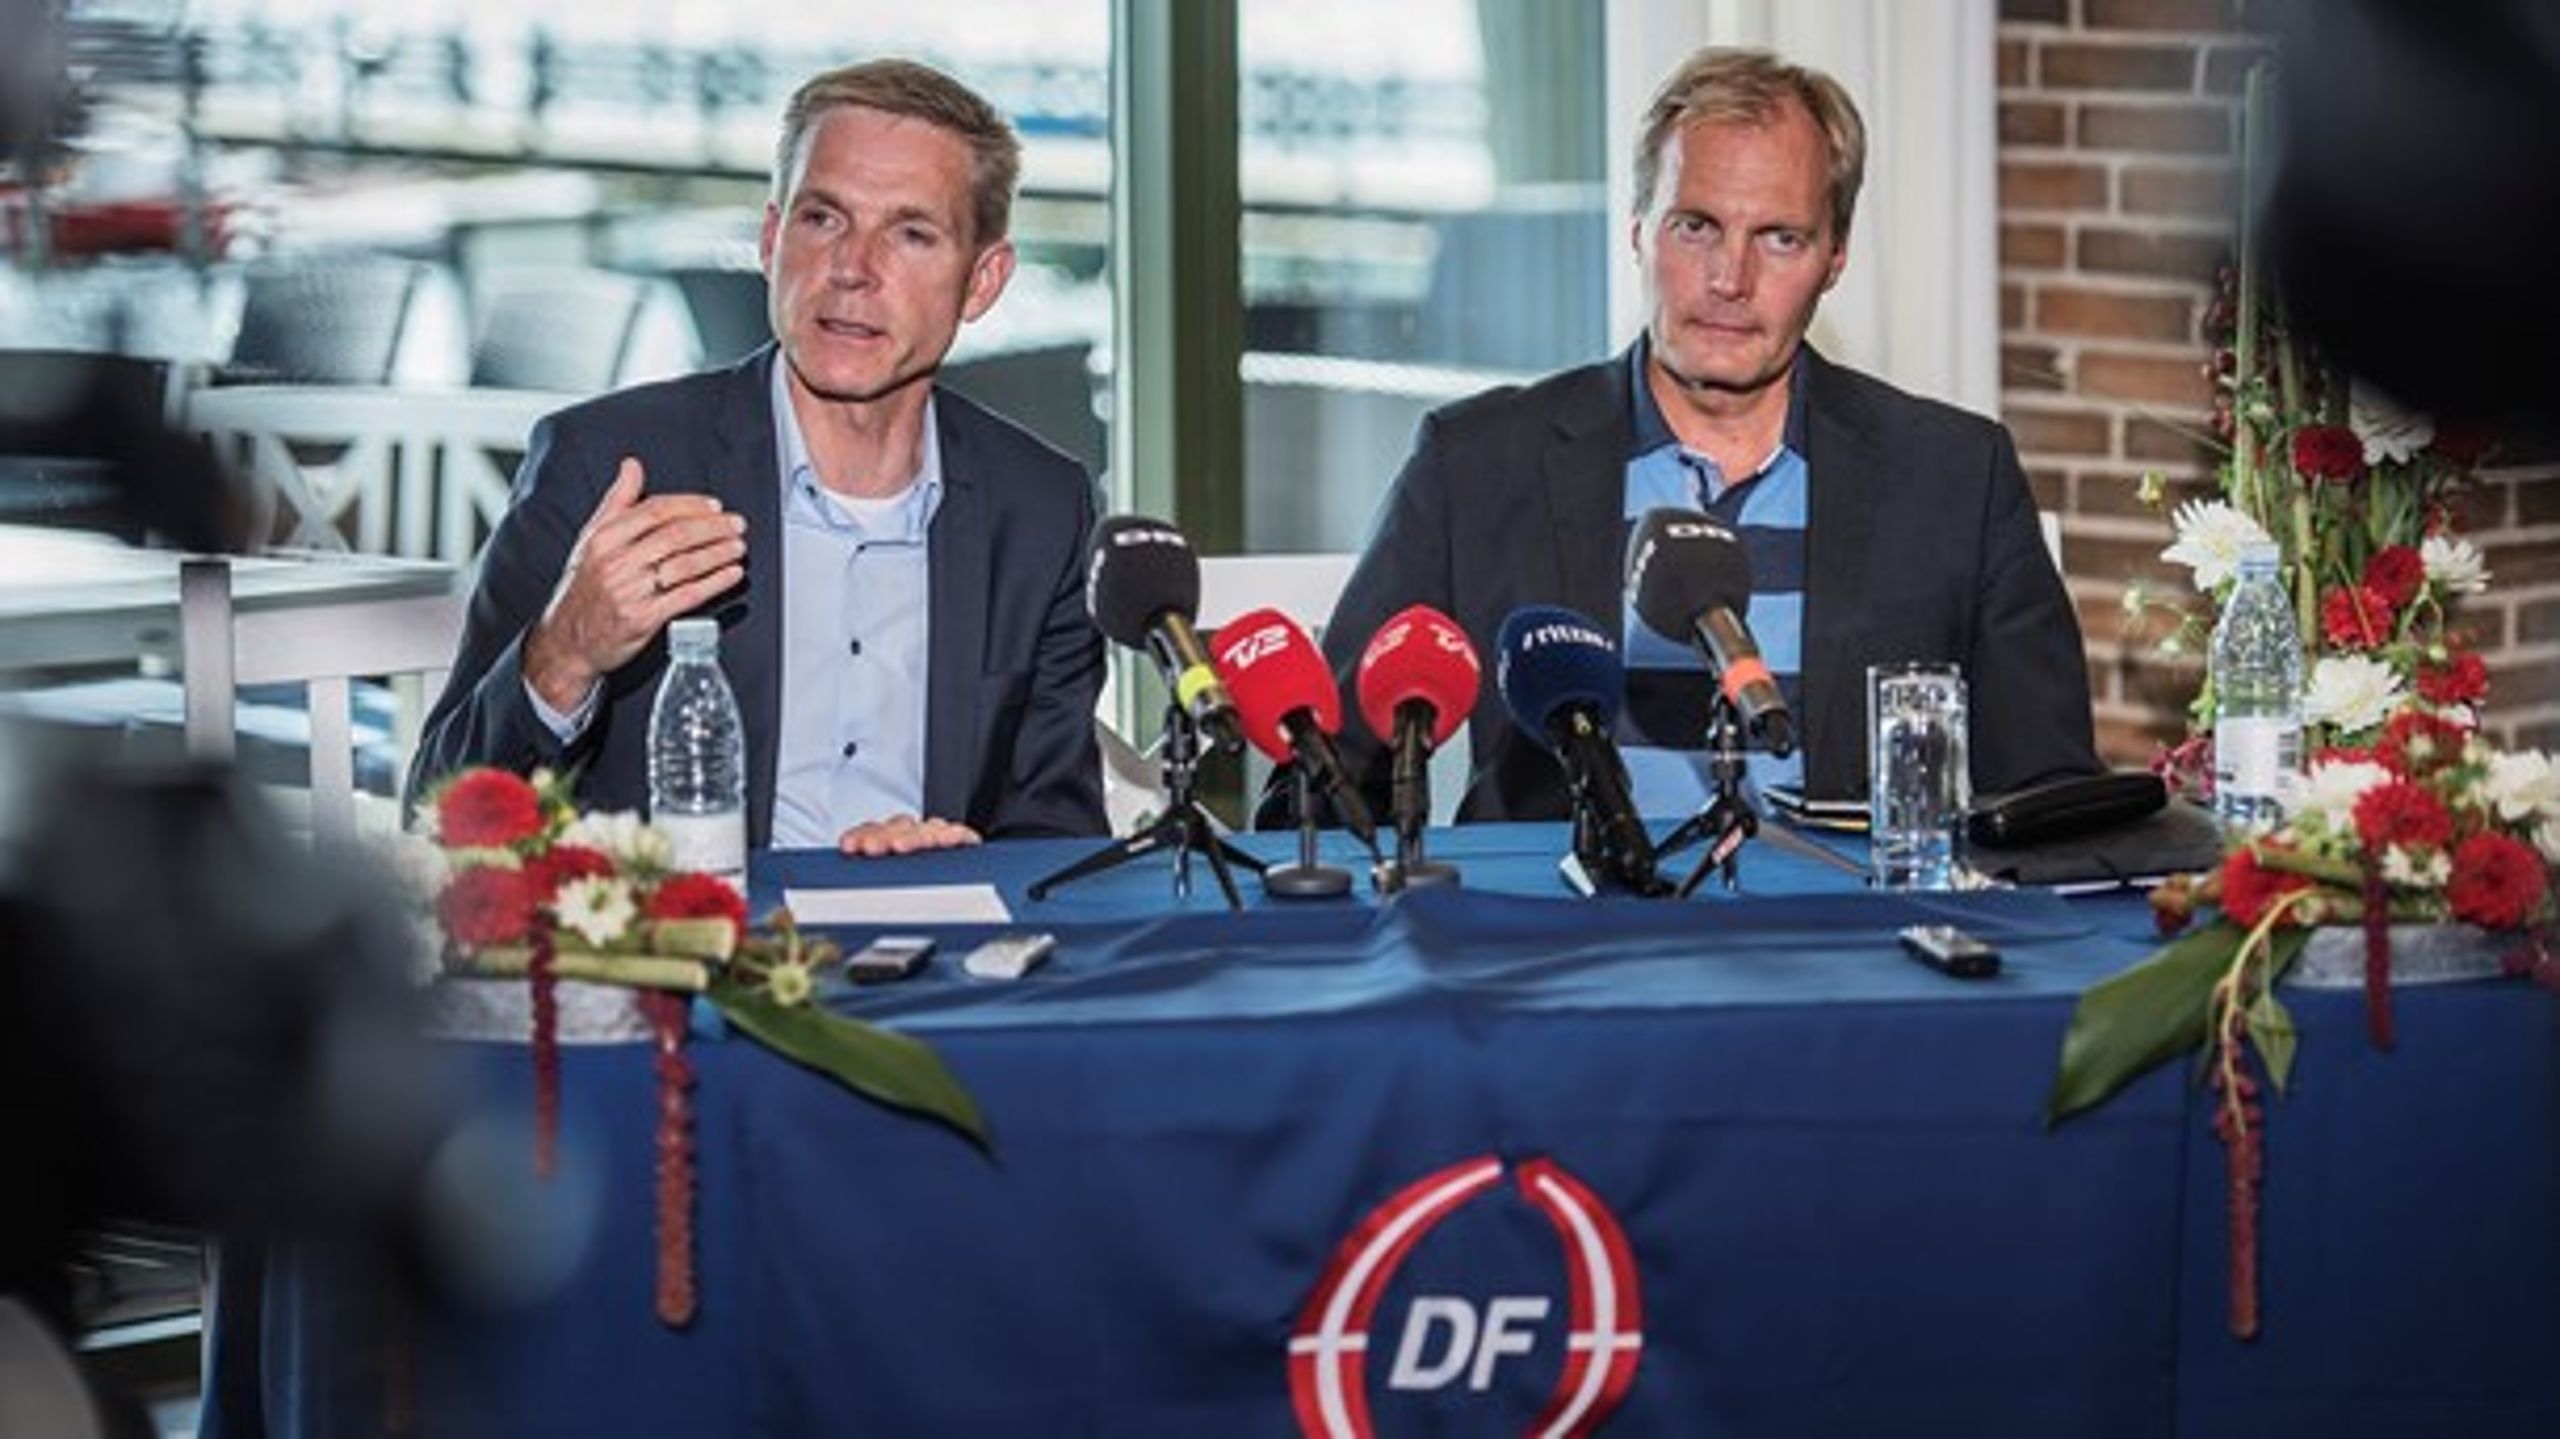 DF er i øjeblikket mere populære blandt arbejderne end Socialdemokratiet. Det glæder Kristian Thulesen Dahl, som dog ikke skal bruge 1. maj på at holde ølkassetaler.